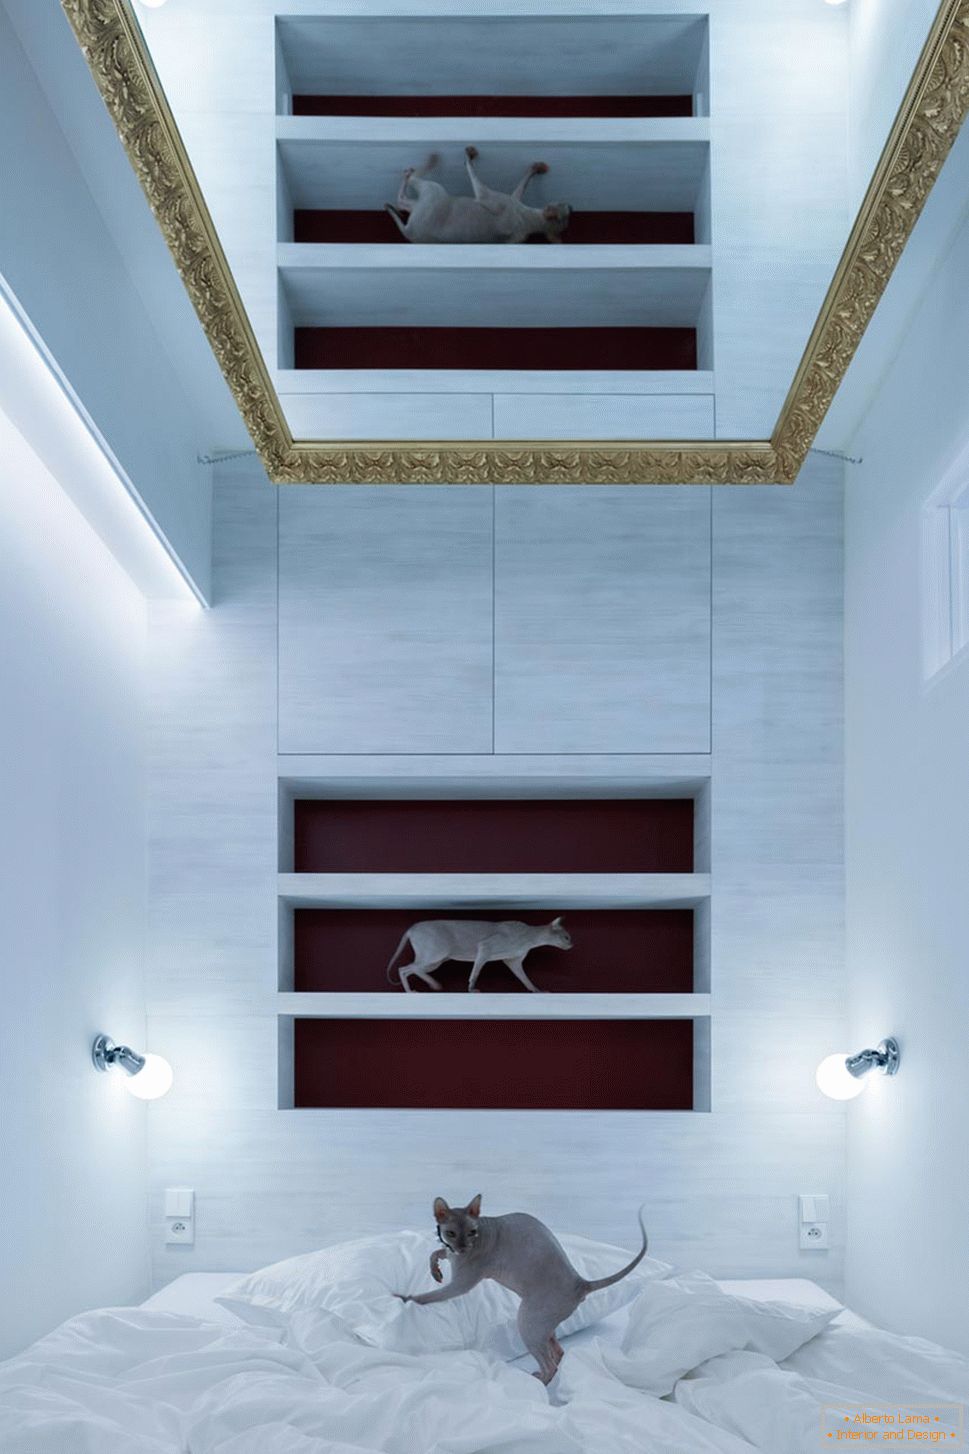 Moderný dizajn malého bytu - mačky v interiéri